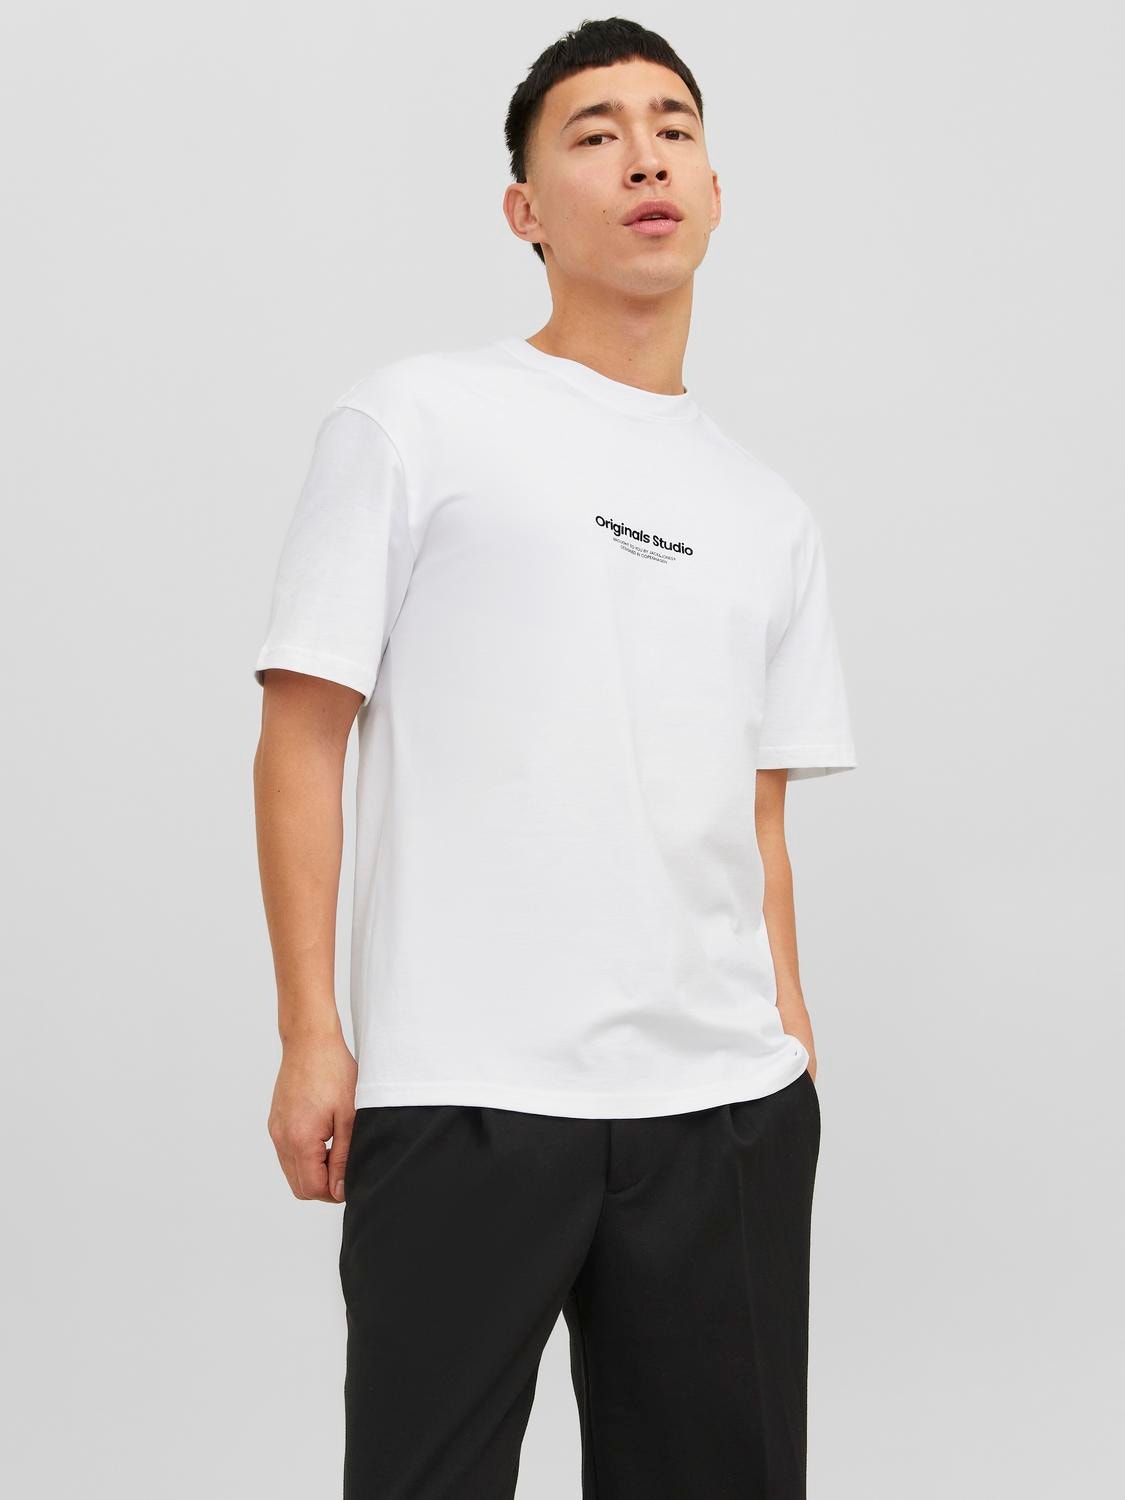 Jack & Jones T-shirt Estampar Decote Redondo -Bright White - 12240121